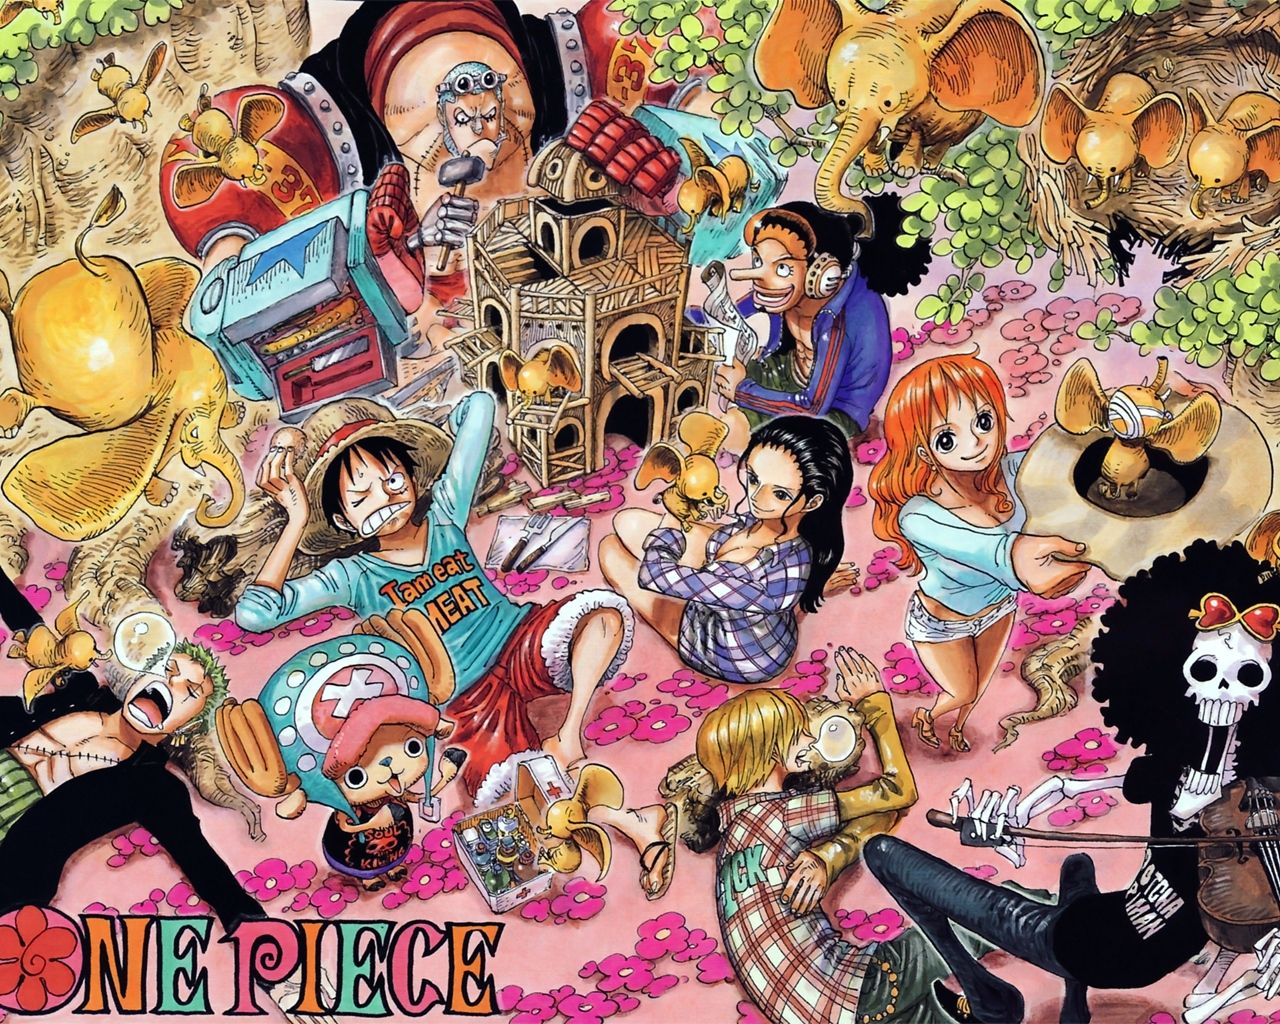 土曜プレミアムに One Piece エピソードオブ東の海 ルフィと4人の仲間の大冒険 が放送決定 おしキャラっ 今流行りのアニメやゲームのキャラクターのオモシロ情報をまとめるサイトです